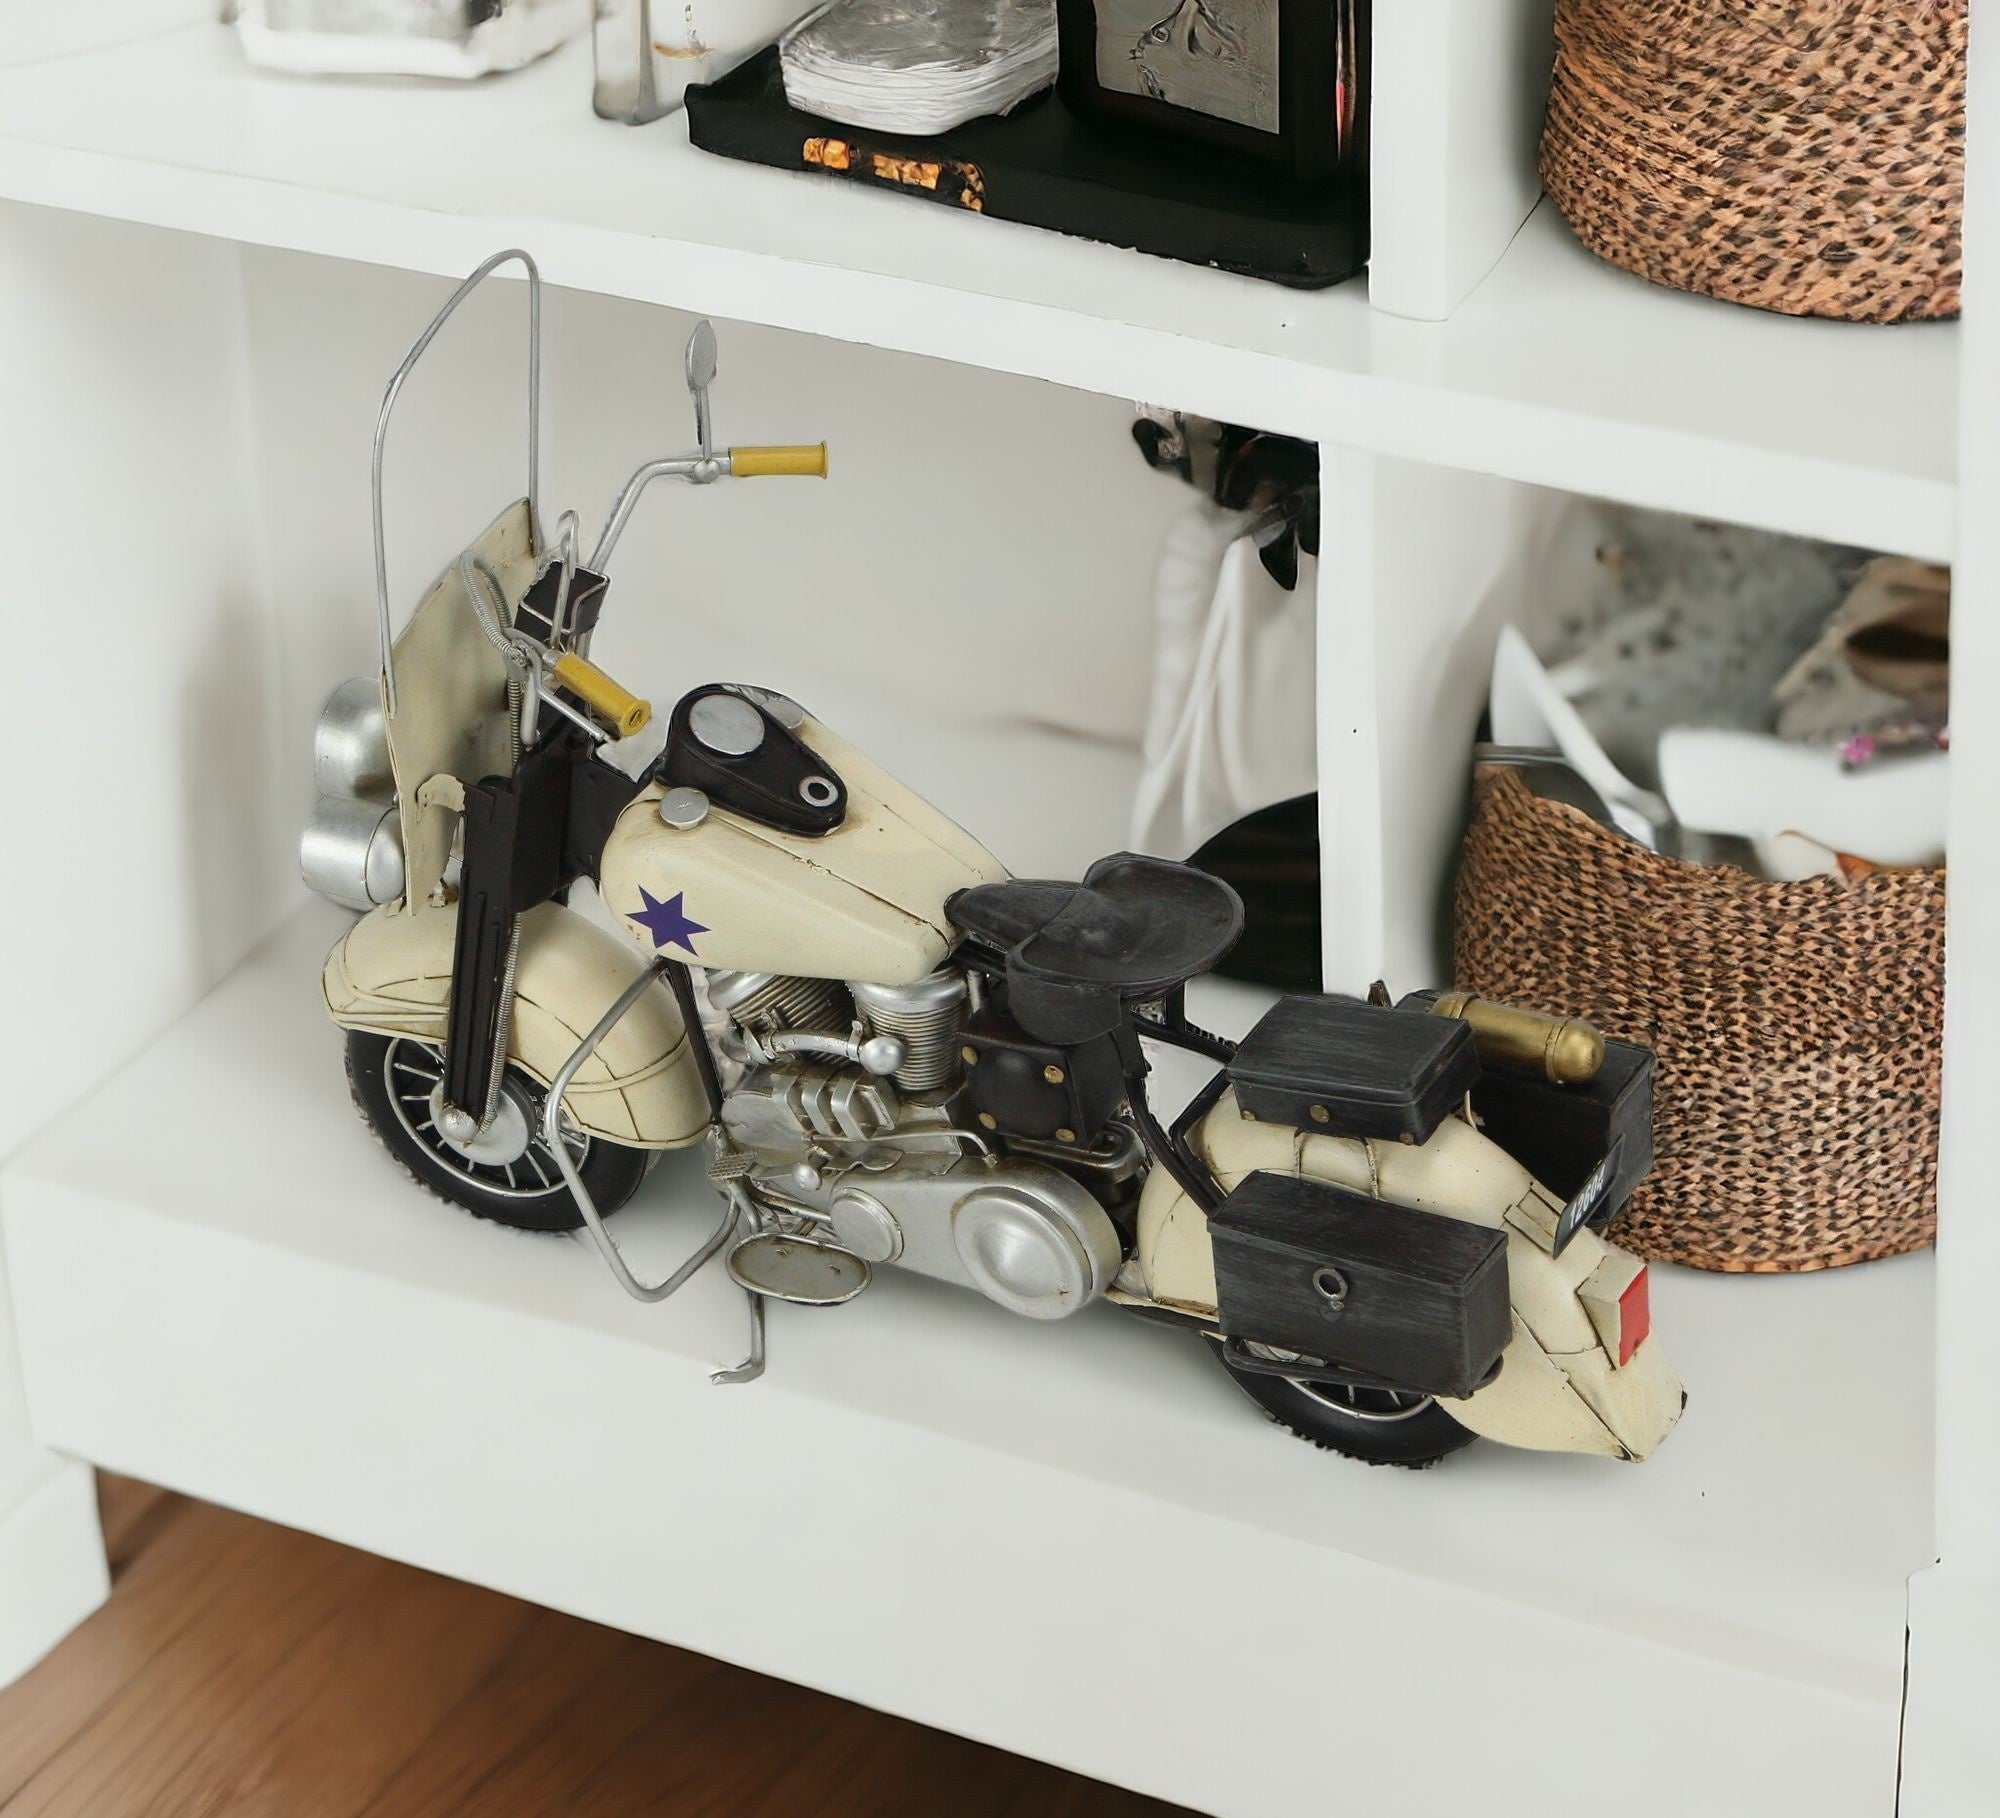 10" Cream Metal Hand Painted Model Motorcycle